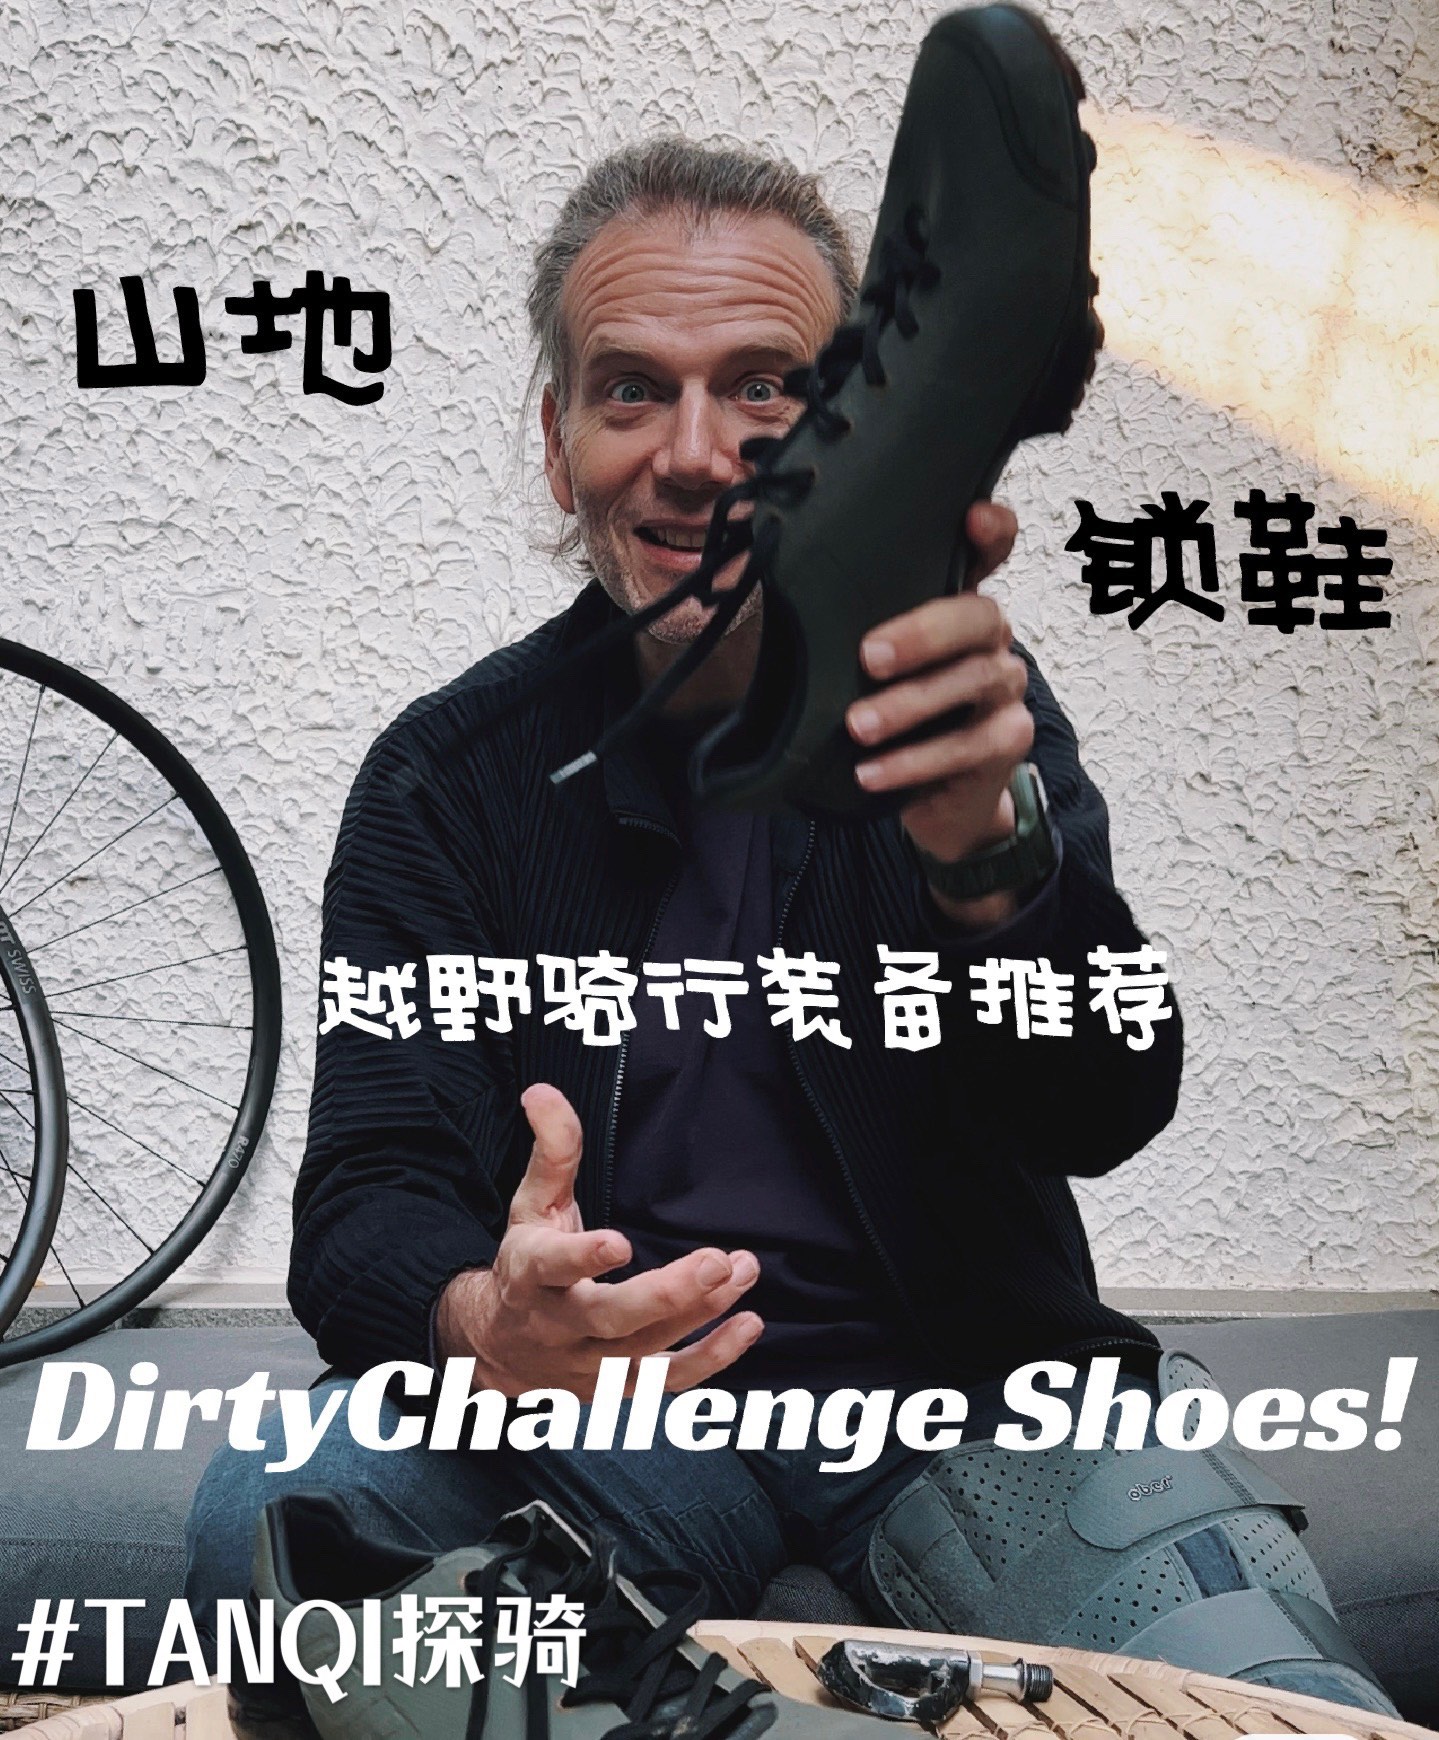 初学者的鞋子建议 Dirty Shoe Advice for Beginners.